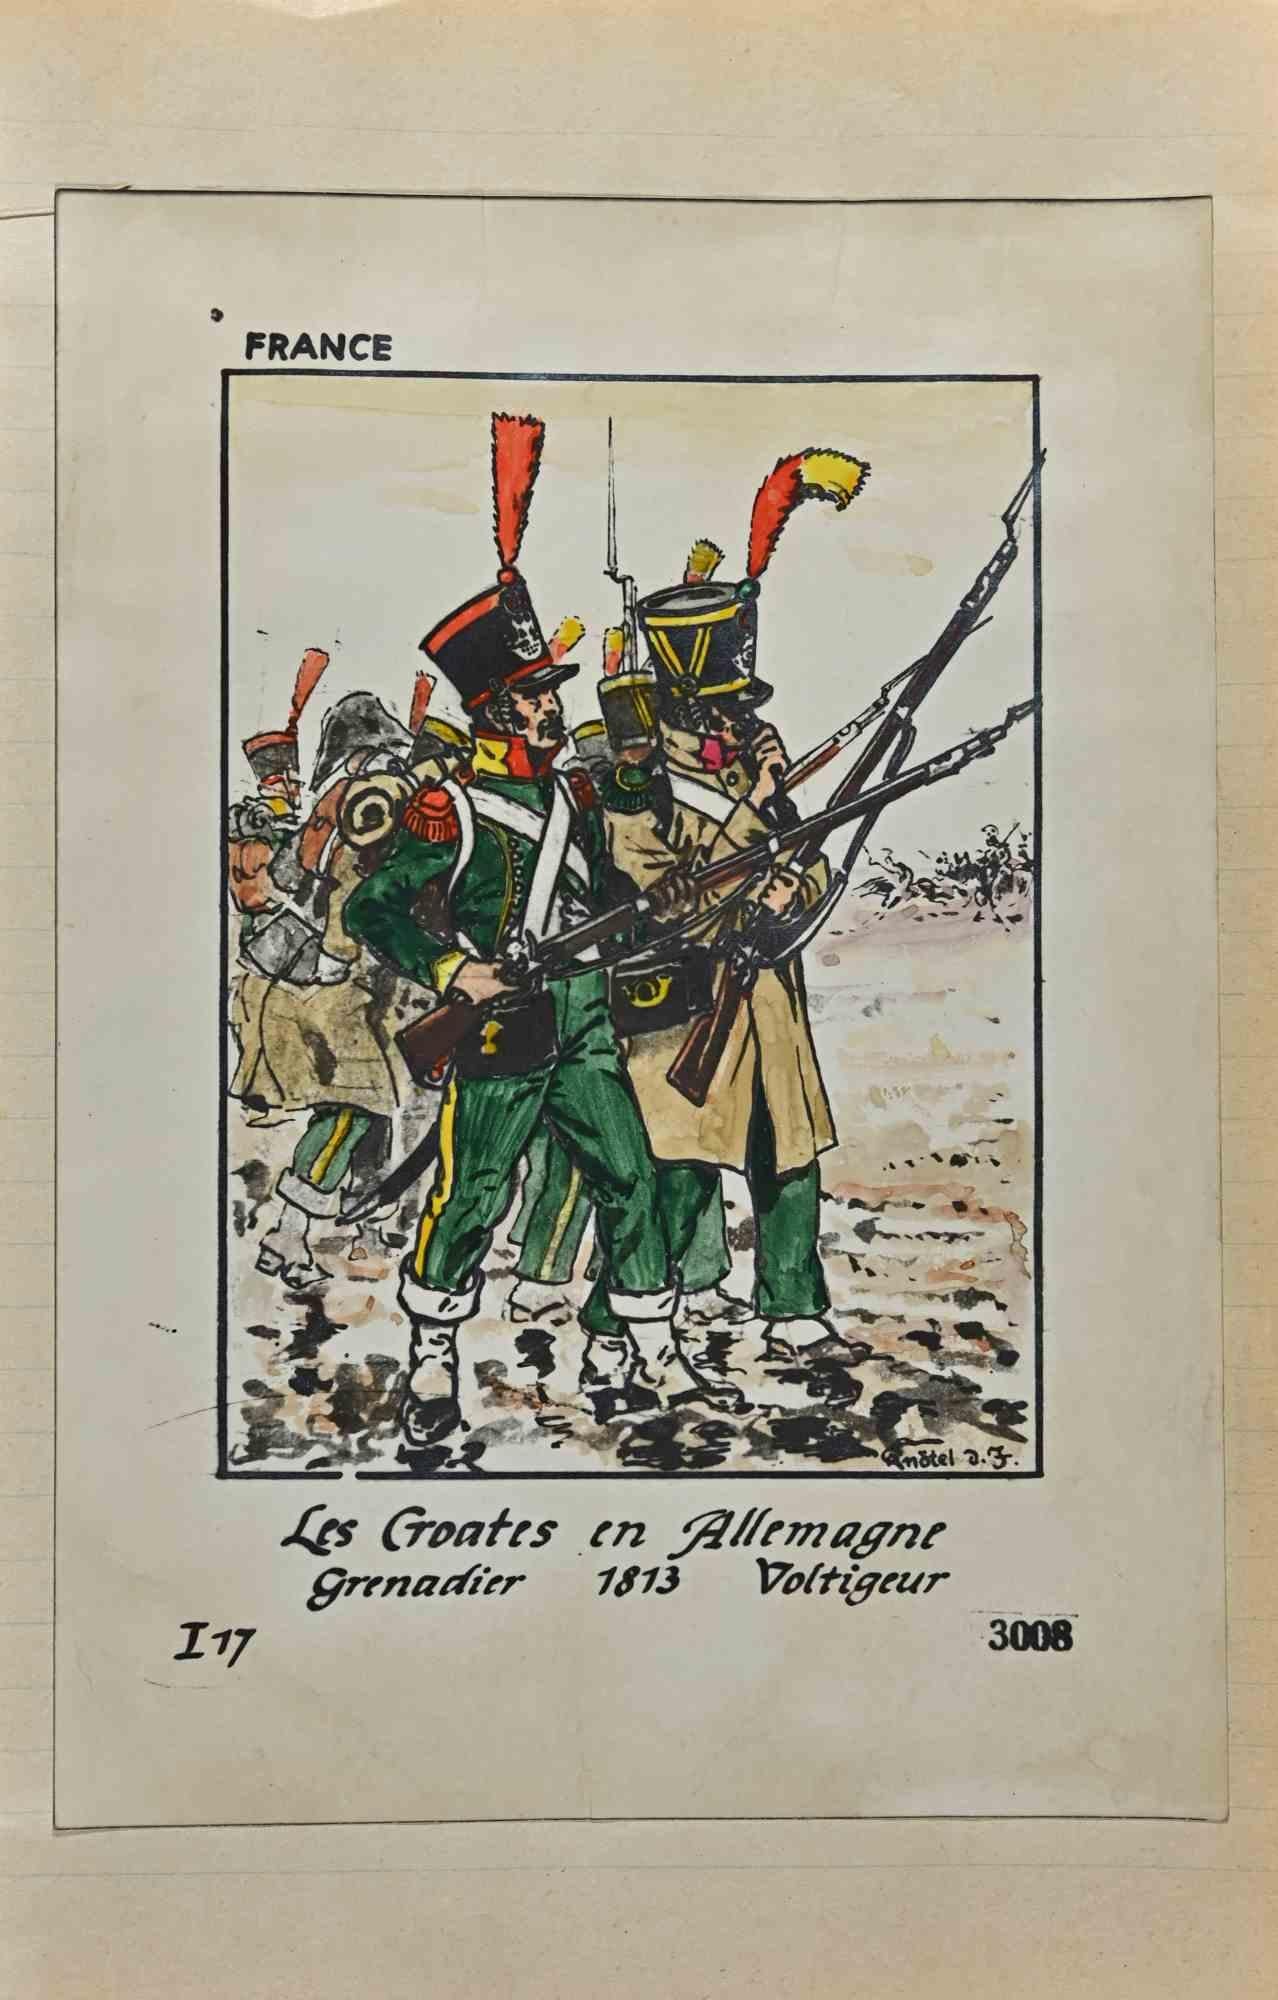 Le Croates en Allemagne – Grenadier 1813 – Zeichnung von Herbert Knotel – 1940er Jahre